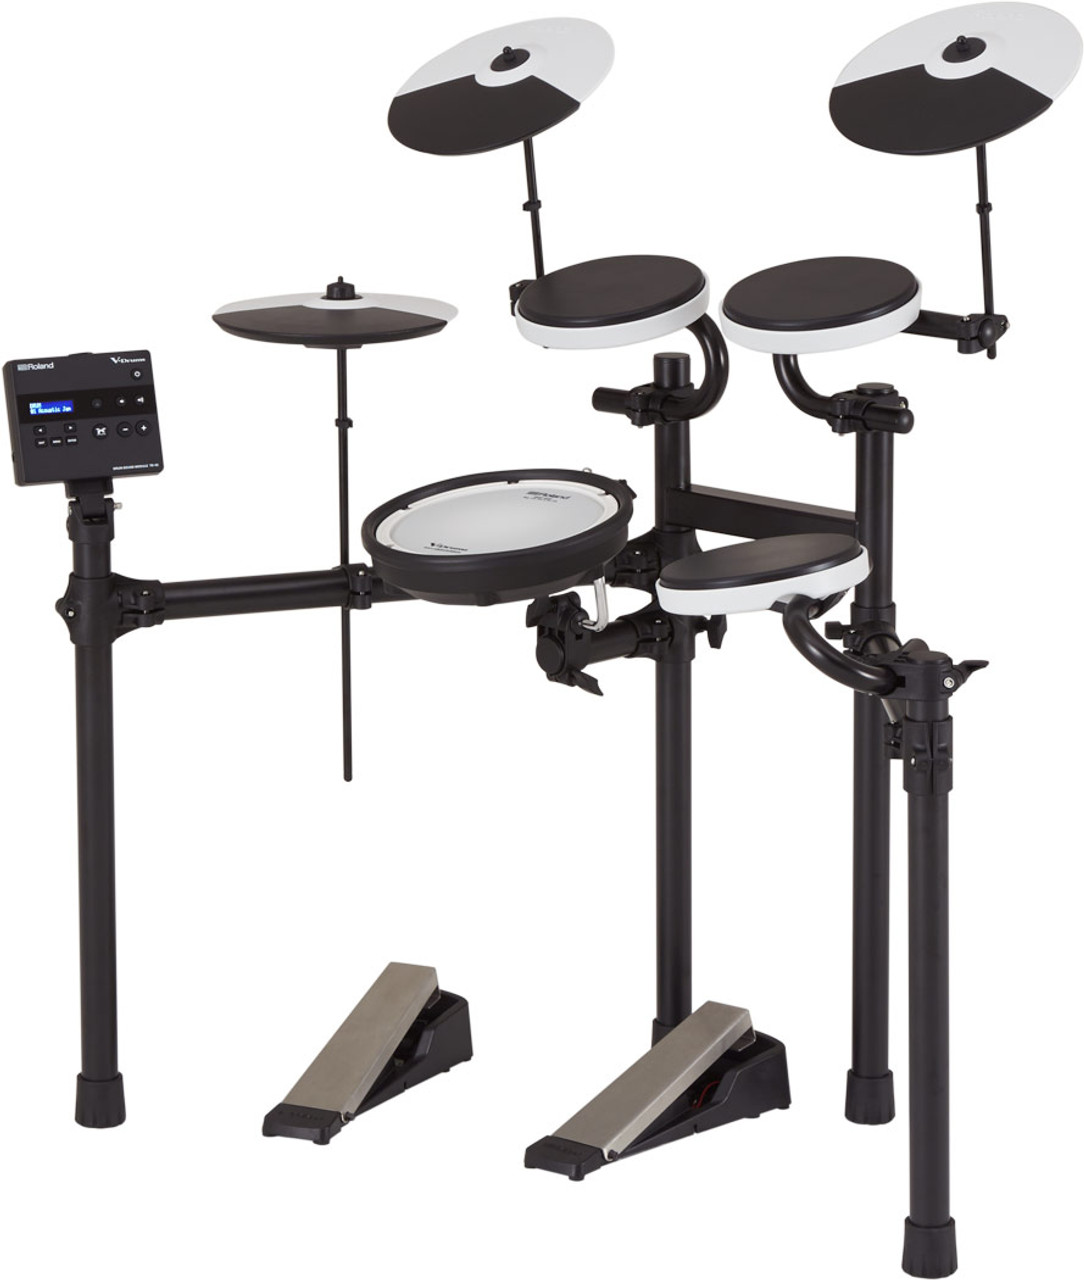 Roland TD-02KV V-Drums Complete Kit